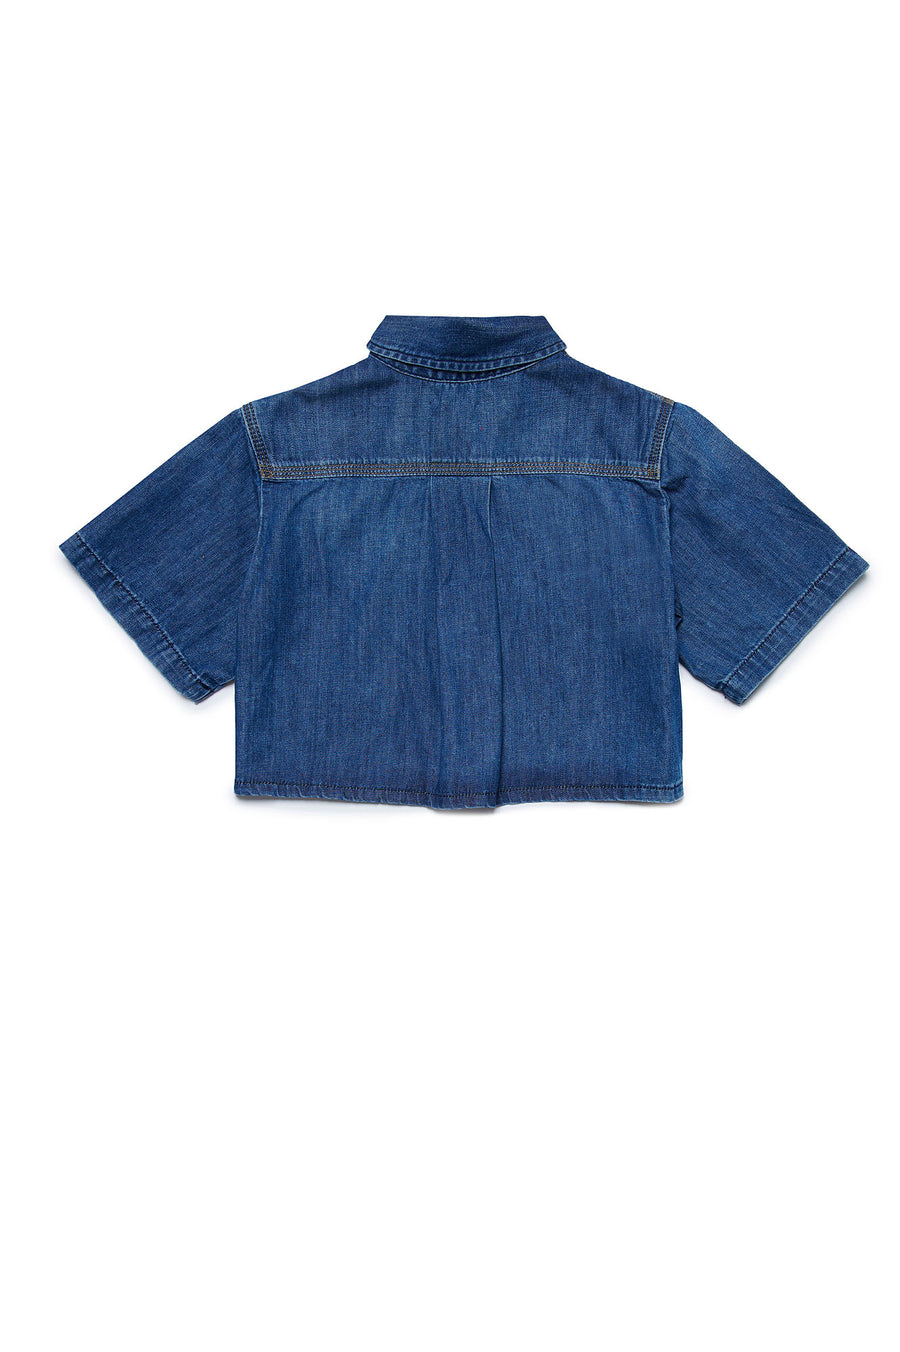 Crop blue denim shirt by Diesel